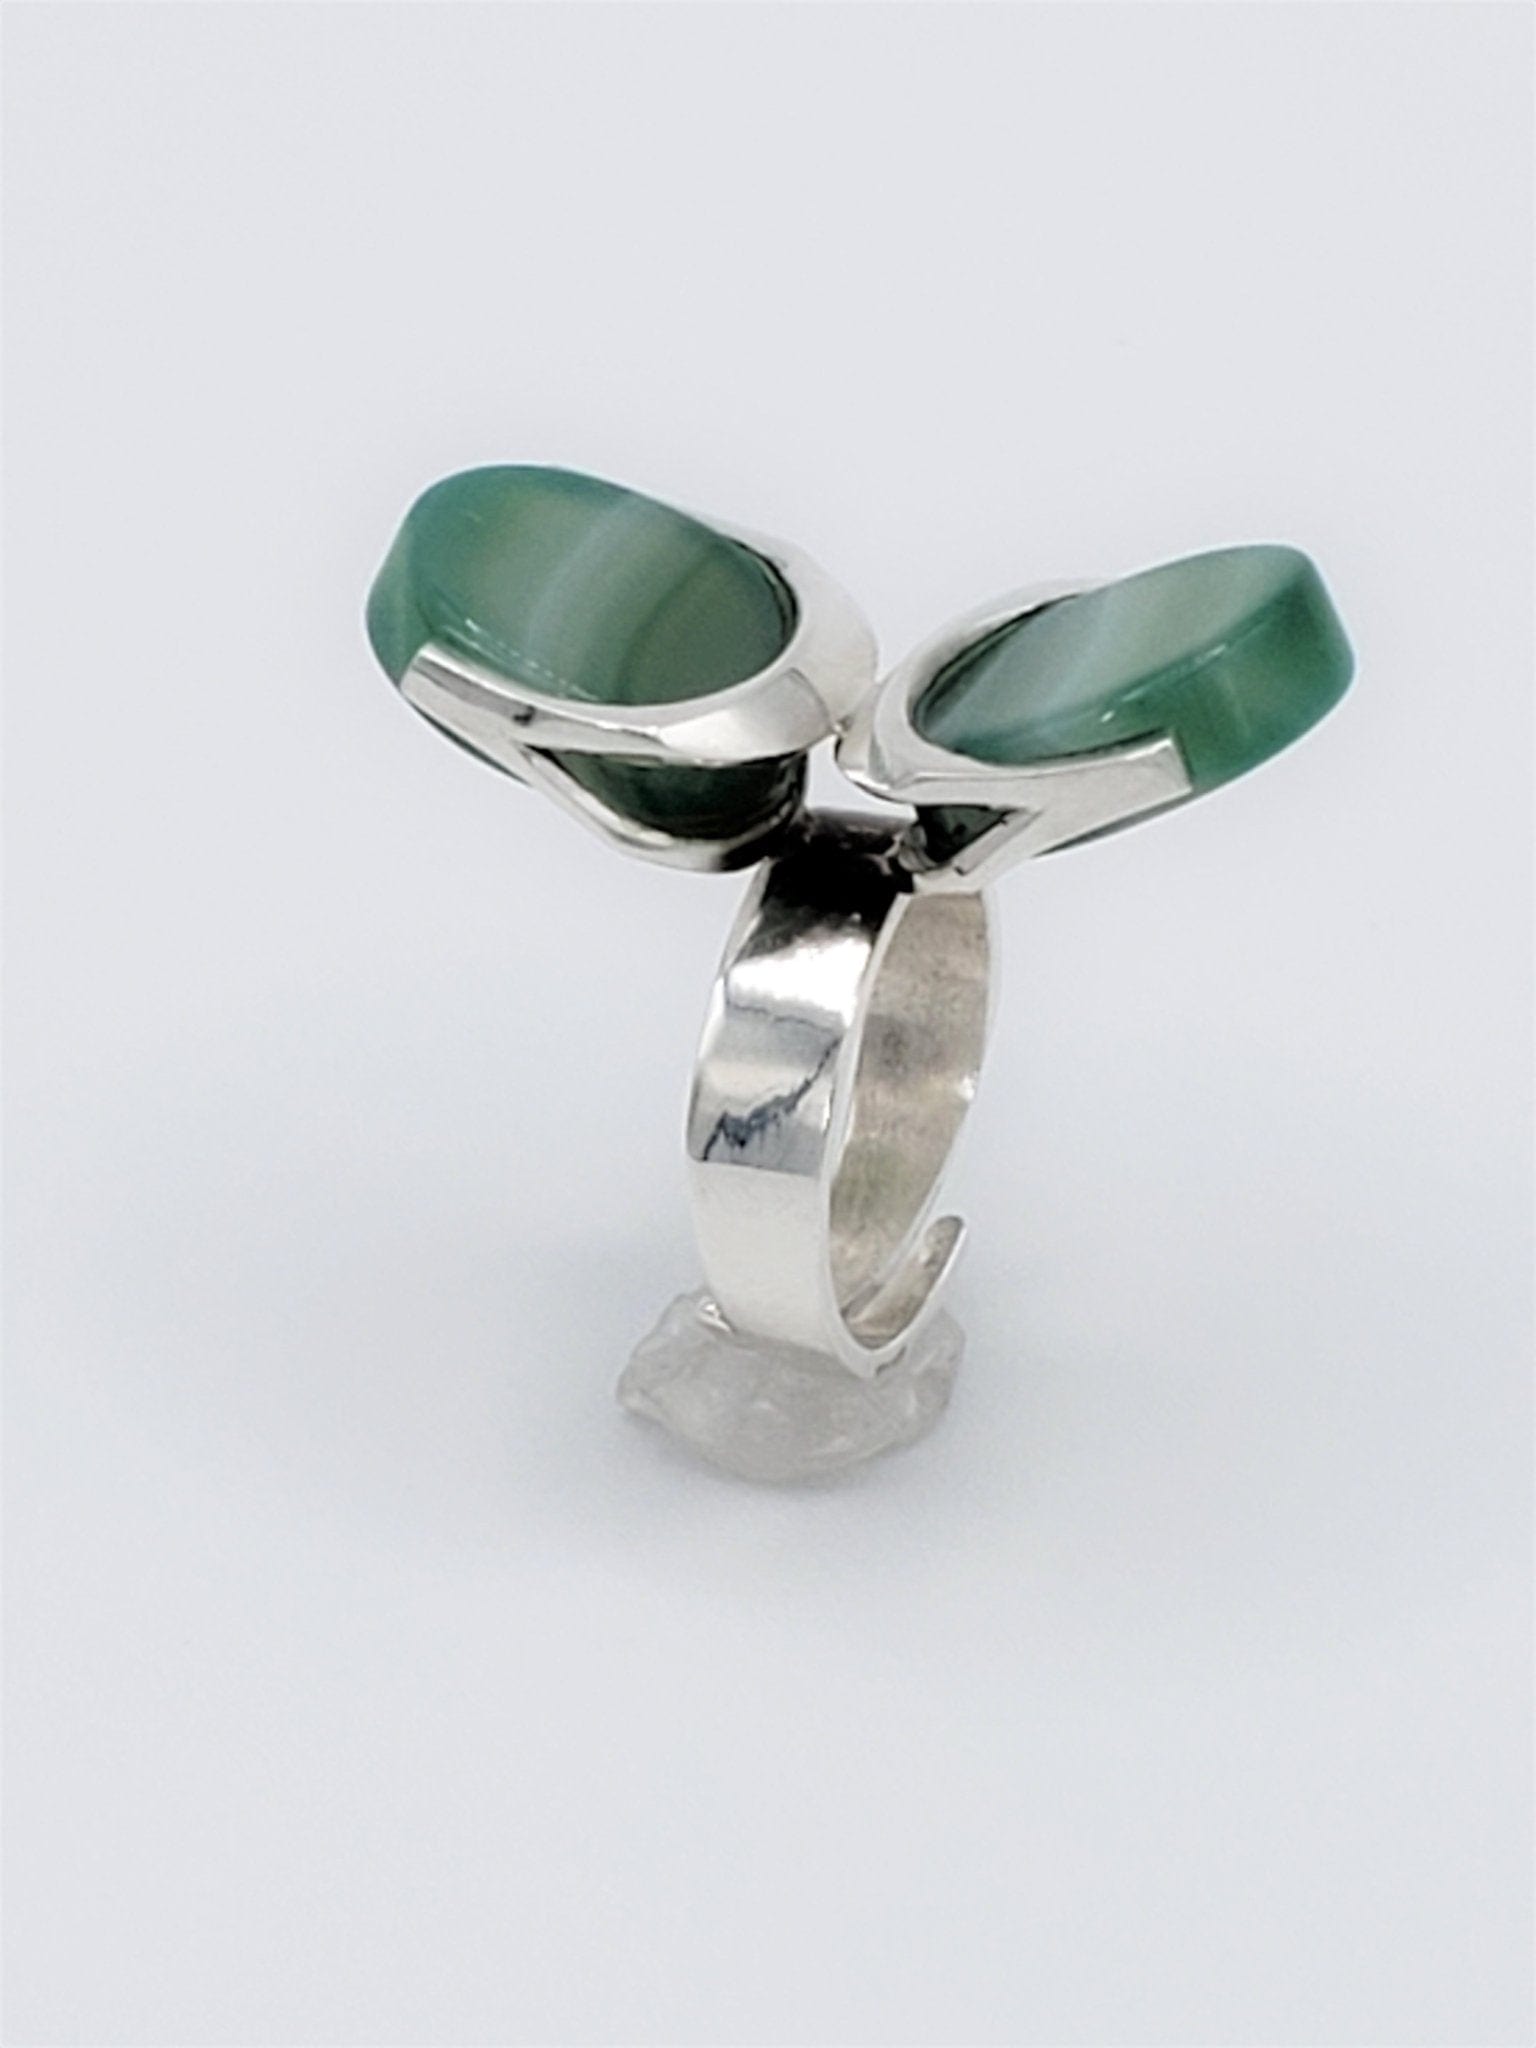 Sirokoru Jewelry RARE Matti Hyvärinen Sirokoru Finland 925S AGATE Modernist Abstract Ring 1970s